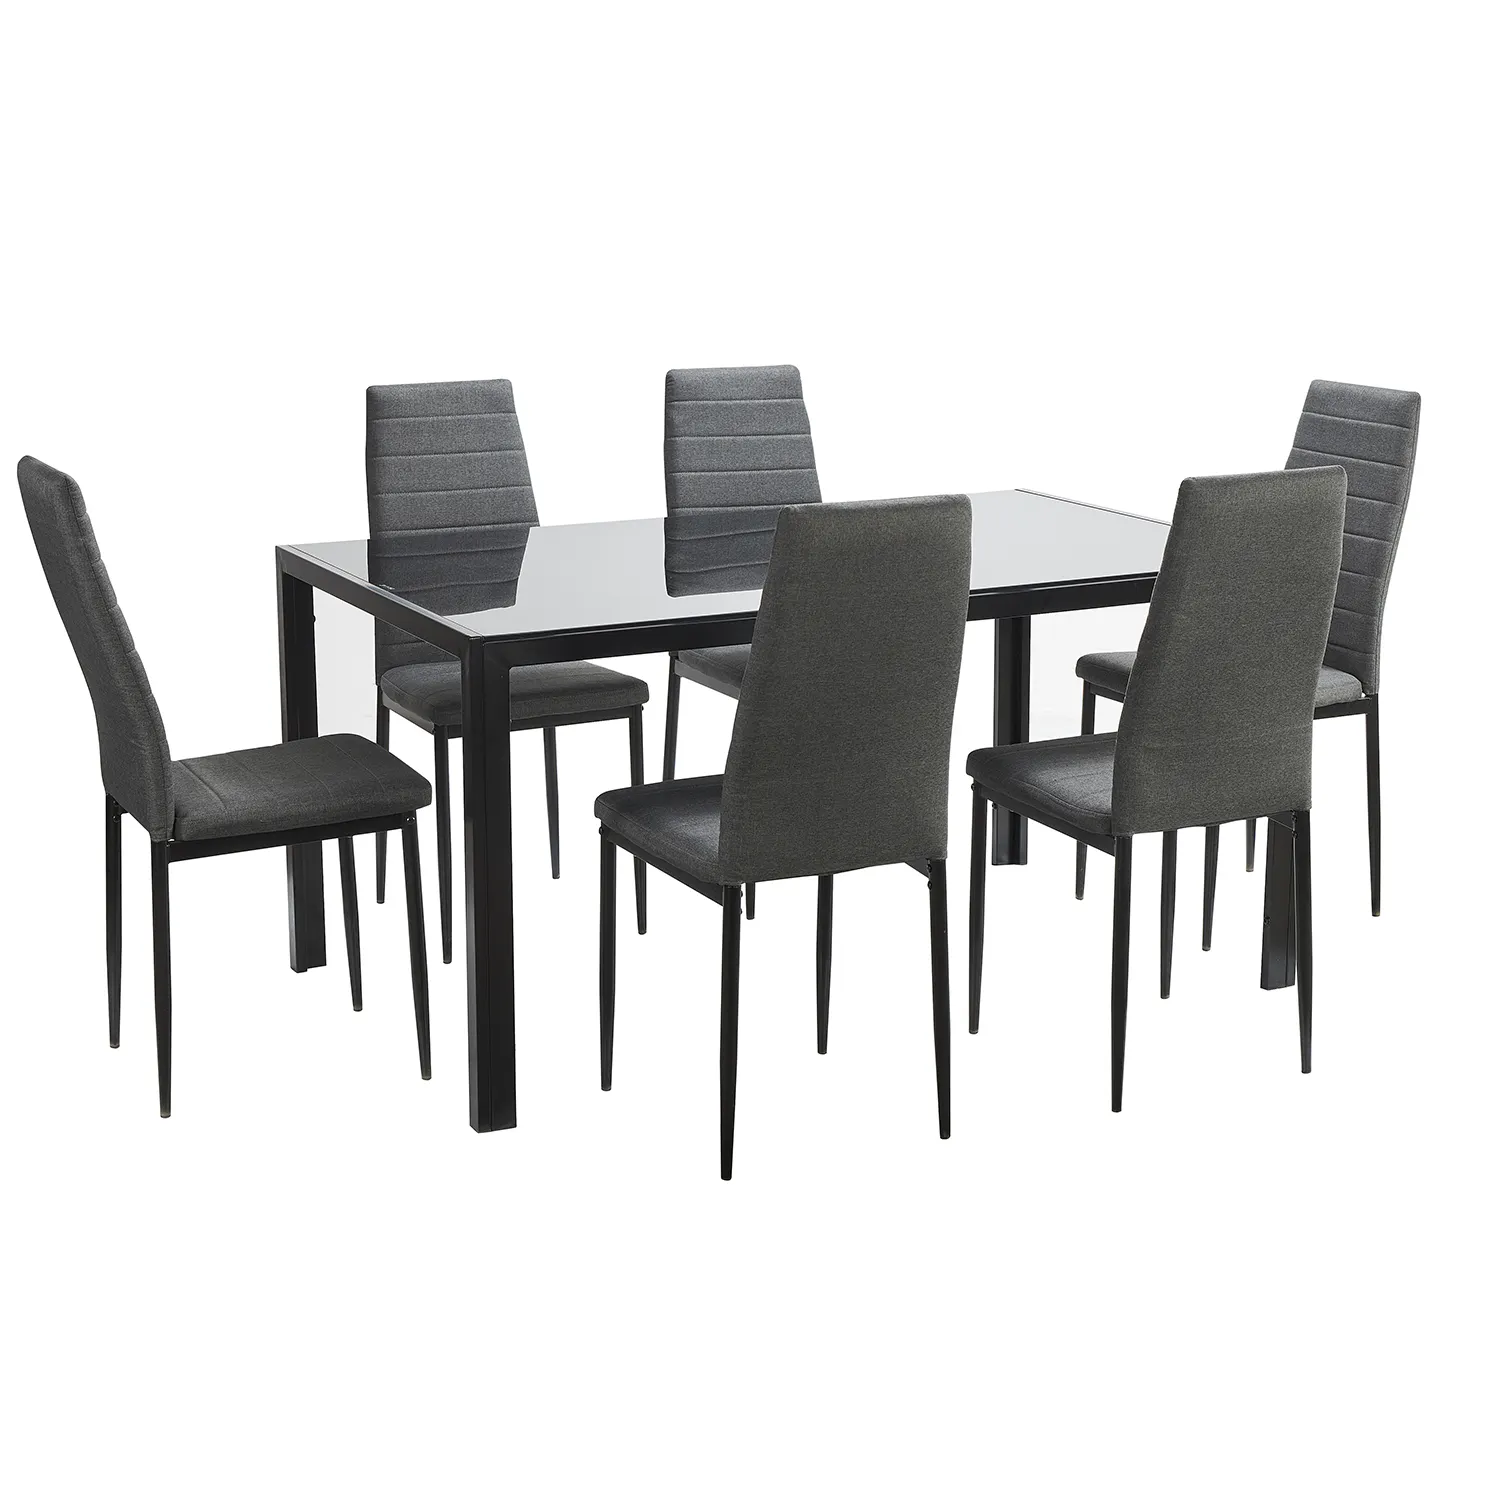 Современная нордическая мебель для столовой из искусственной кожи обеденный стул стеклянный обеденный стол набор 6 стульев